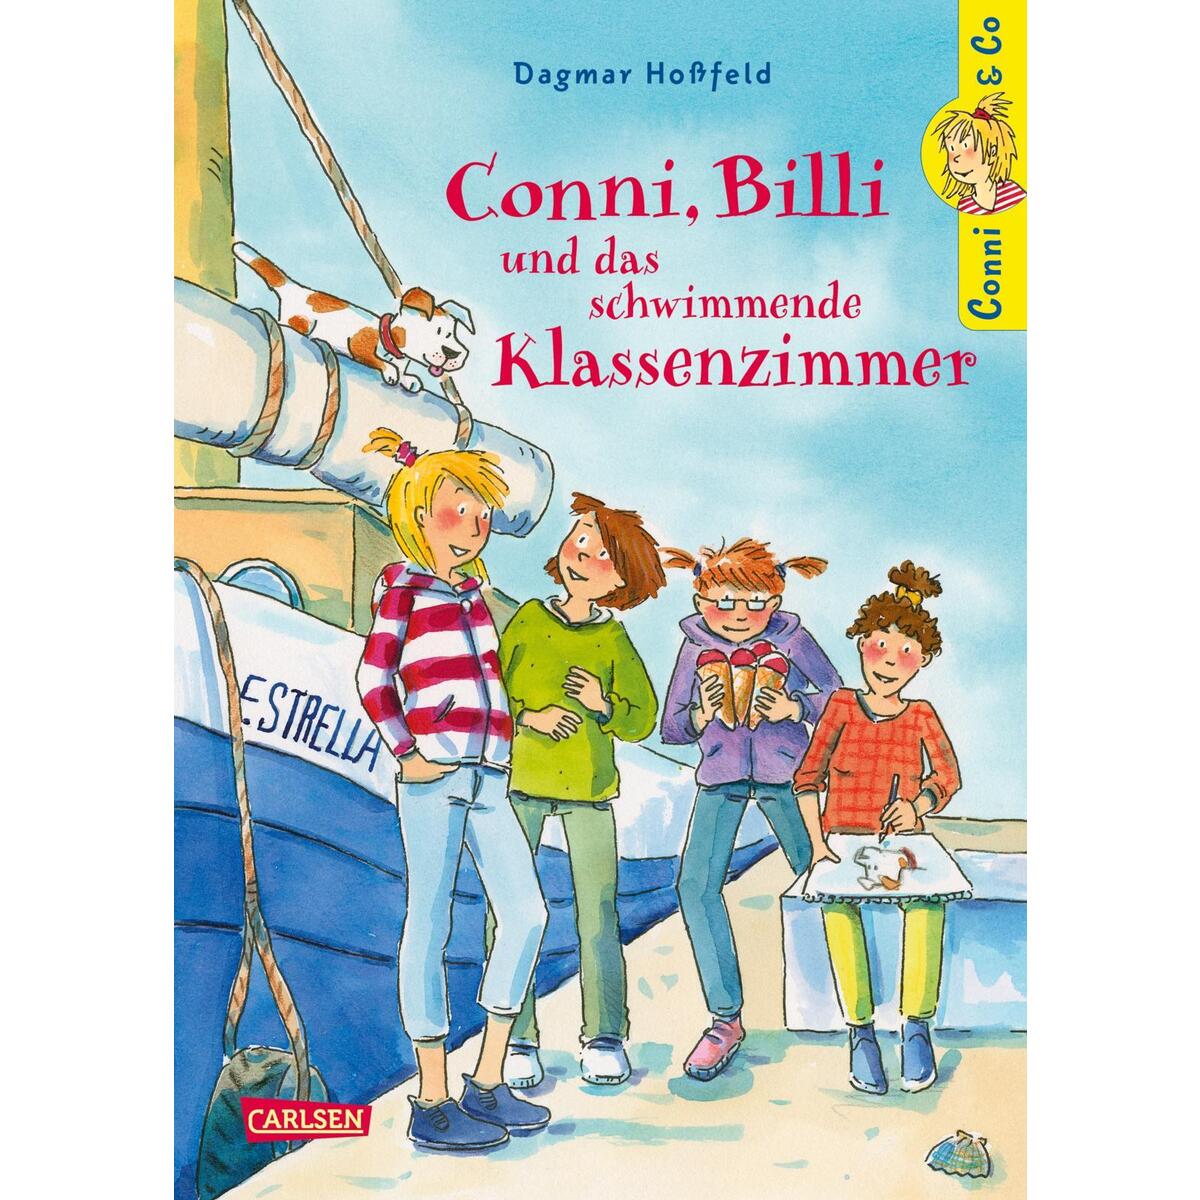 Conni & Co 17: Conni, Billi und das schwimmende Klassenzimmer von Carlsen Verlag GmbH